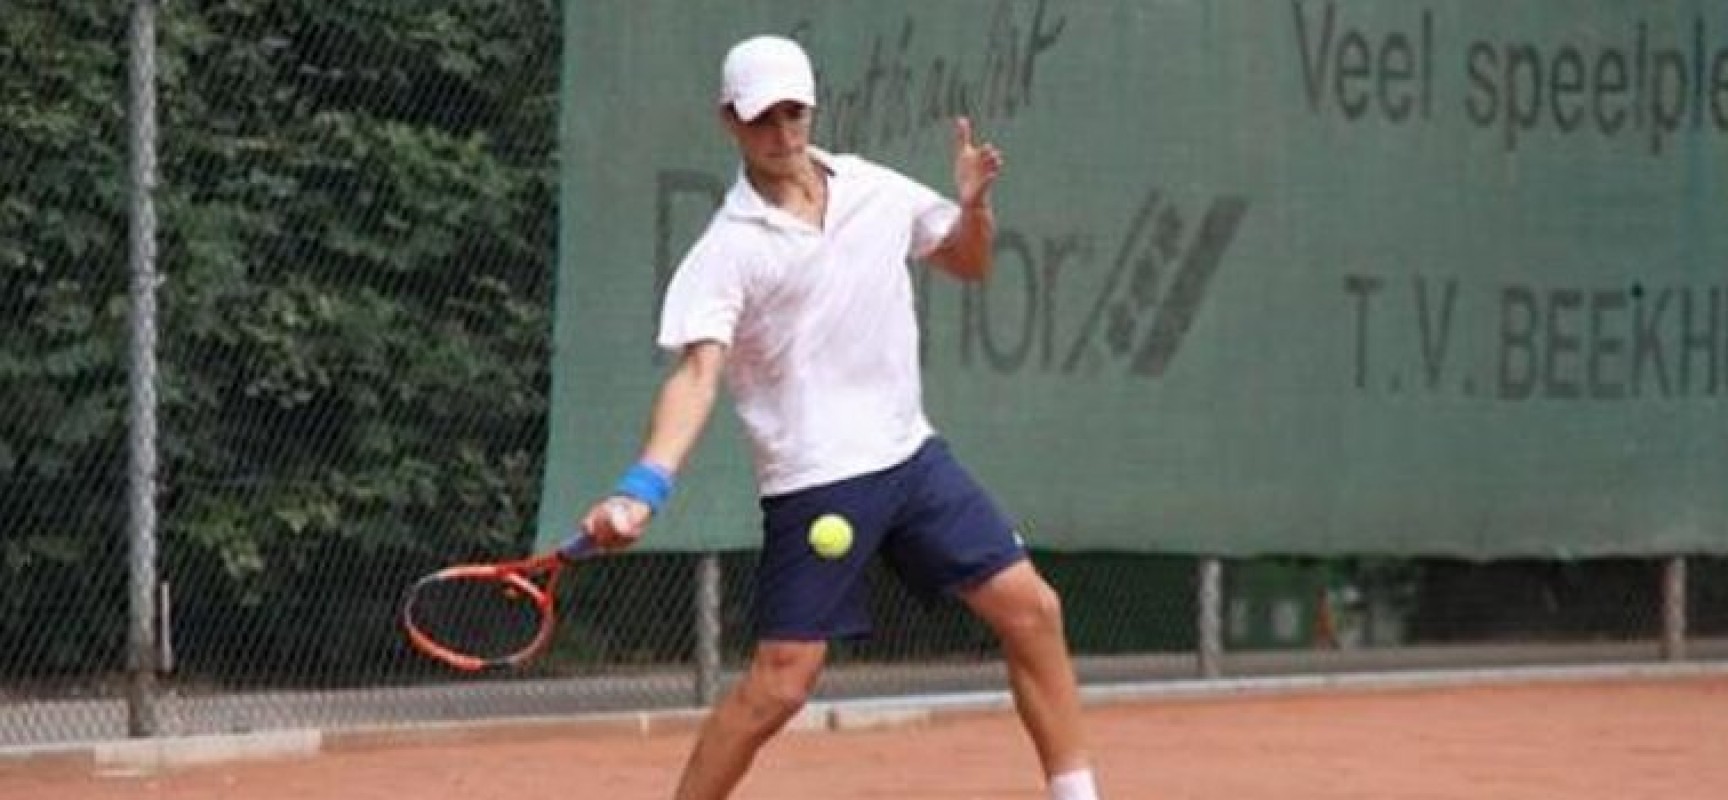 Tennis, Andrea Pellegrino eliminato in Francia